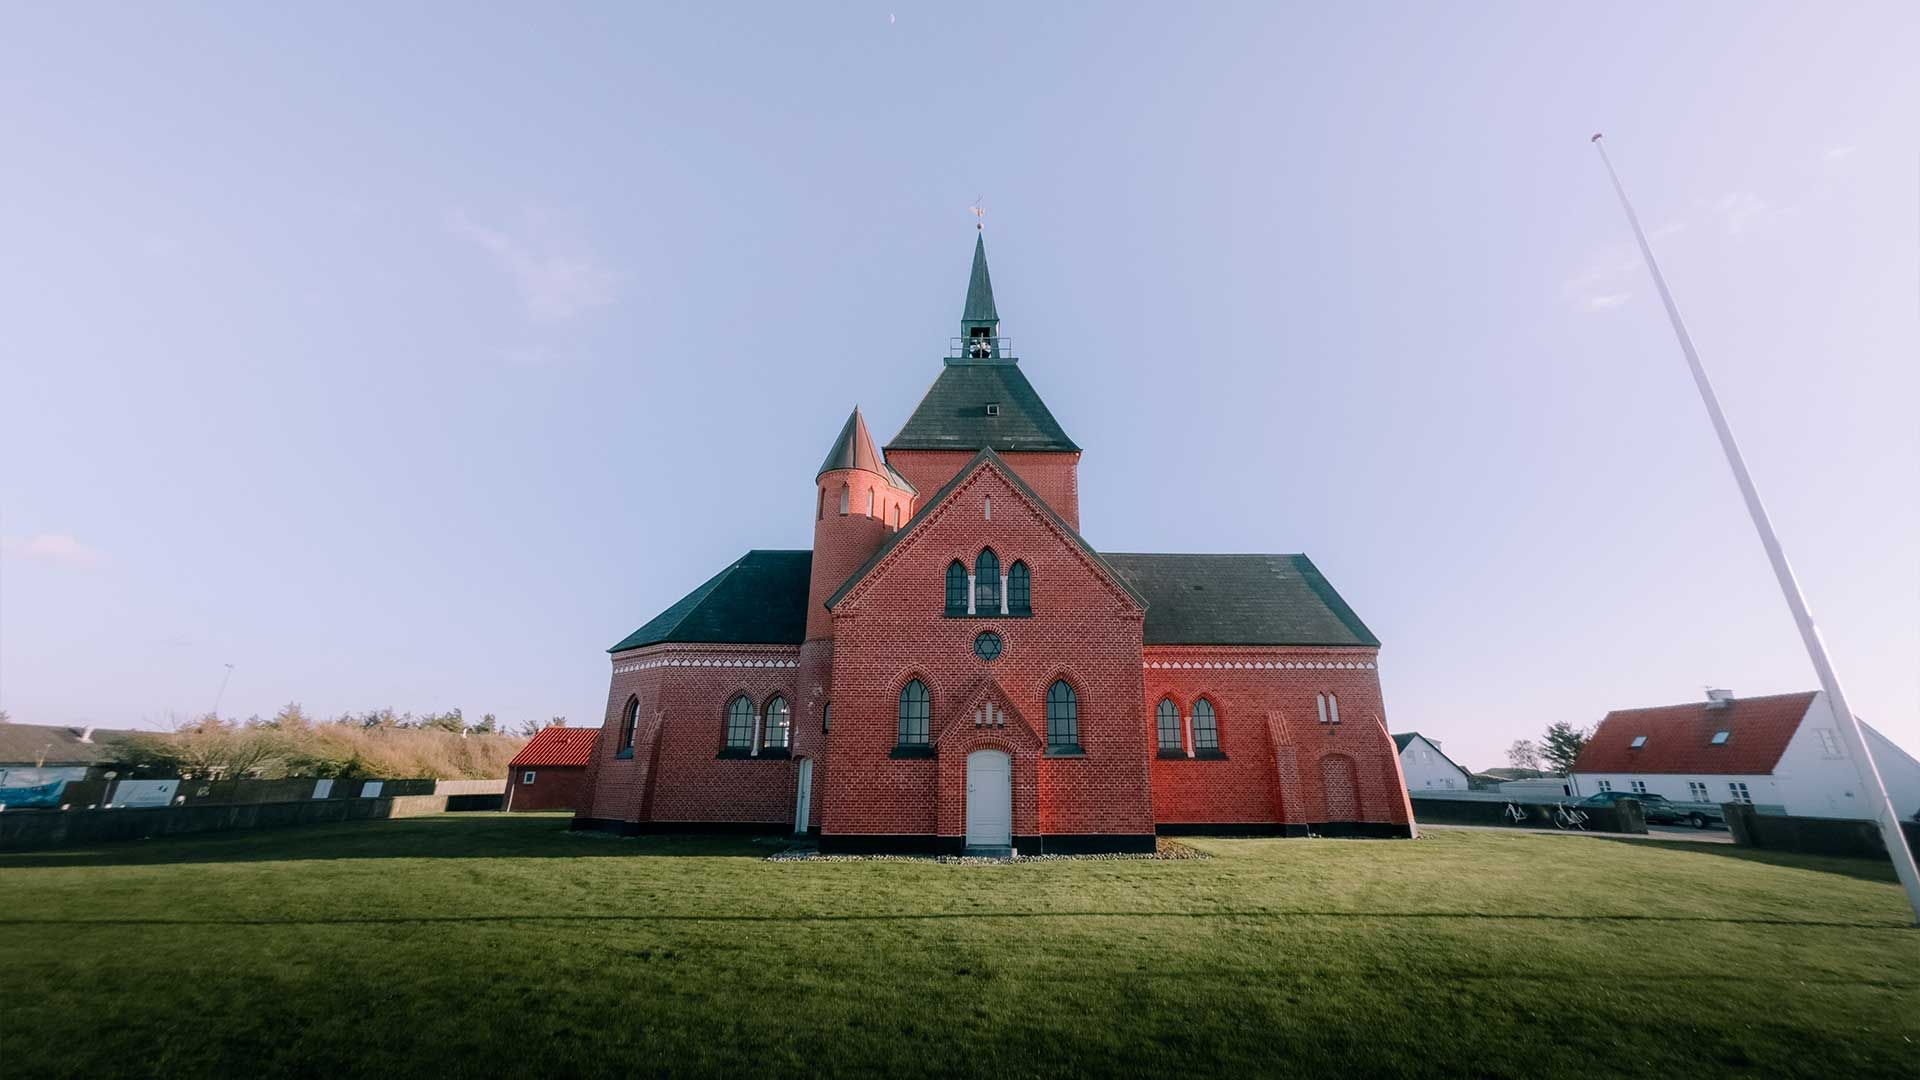 Photographie de jour d'une grande maison au Danemark